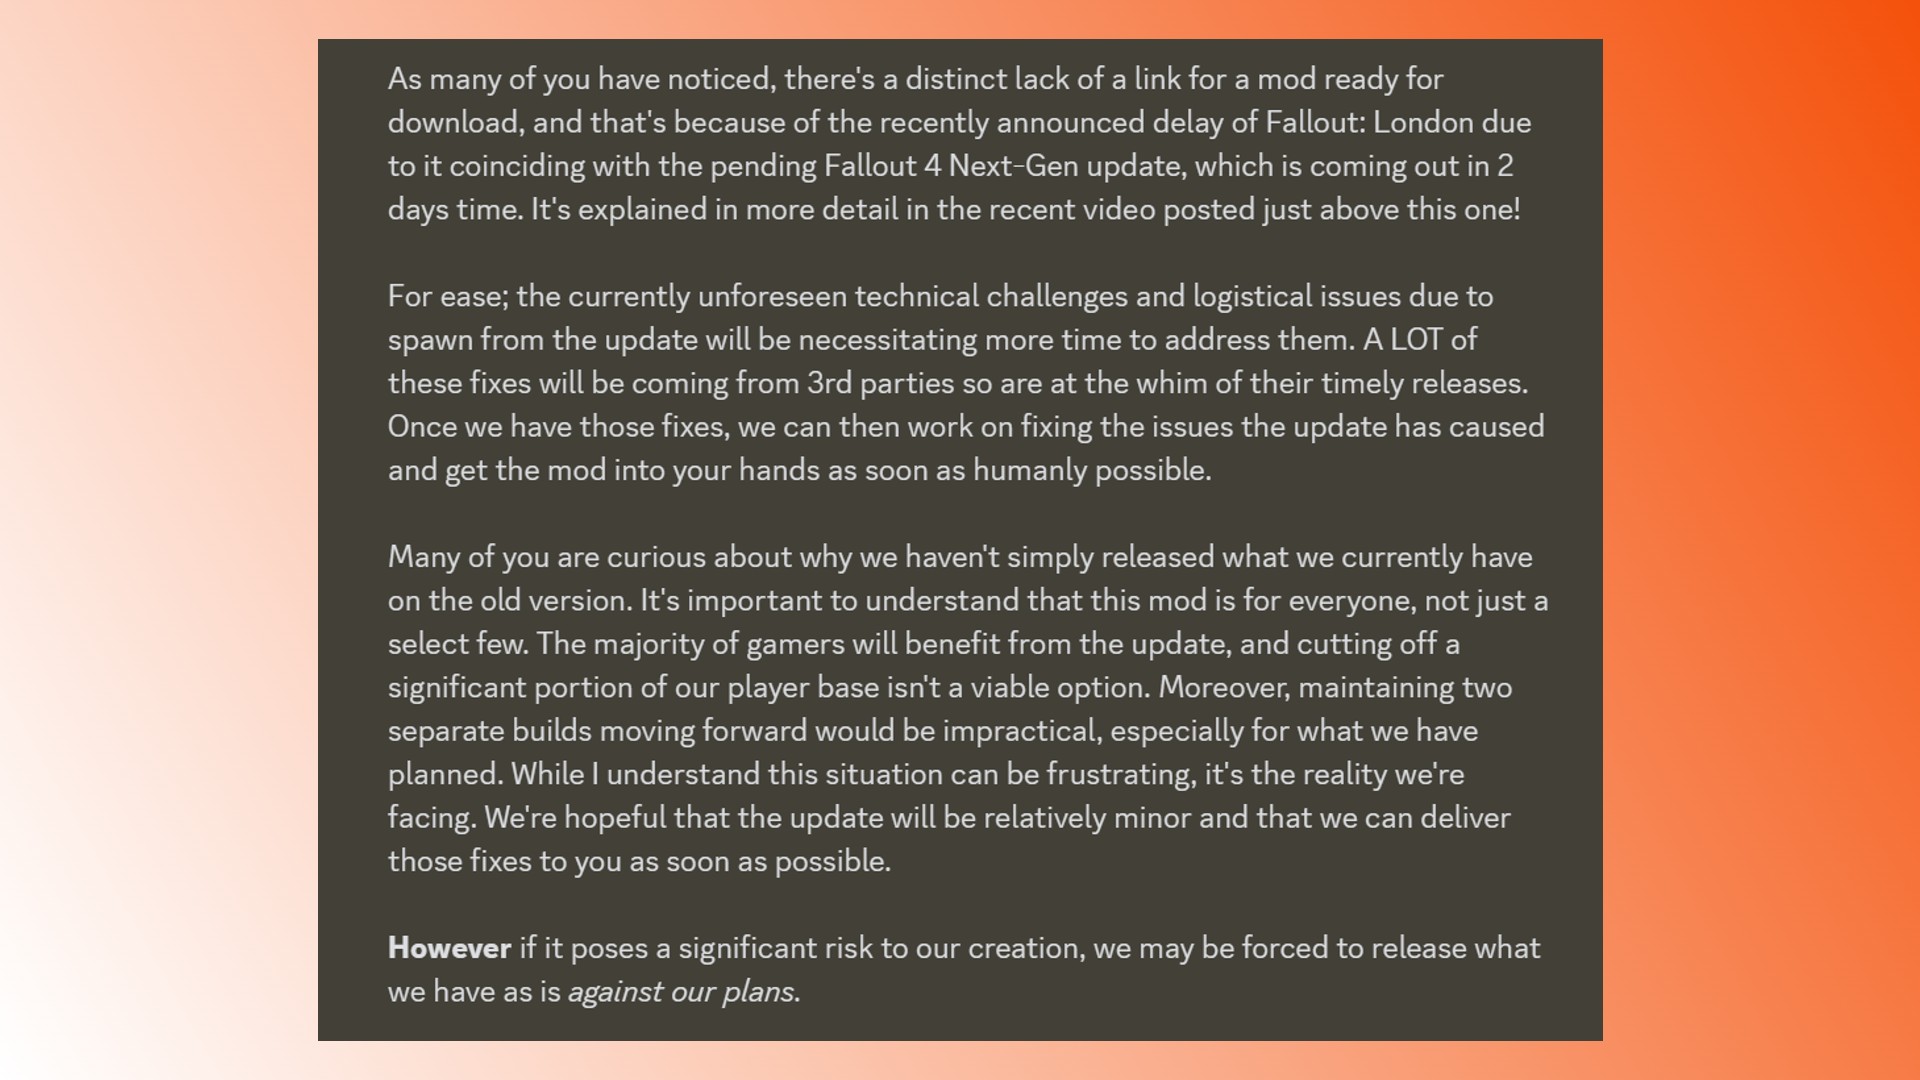 Veröffentlichungsdatum von Fallout London: Eine Erklärung des Fallout 4 Fallout London Mod-Entwicklers